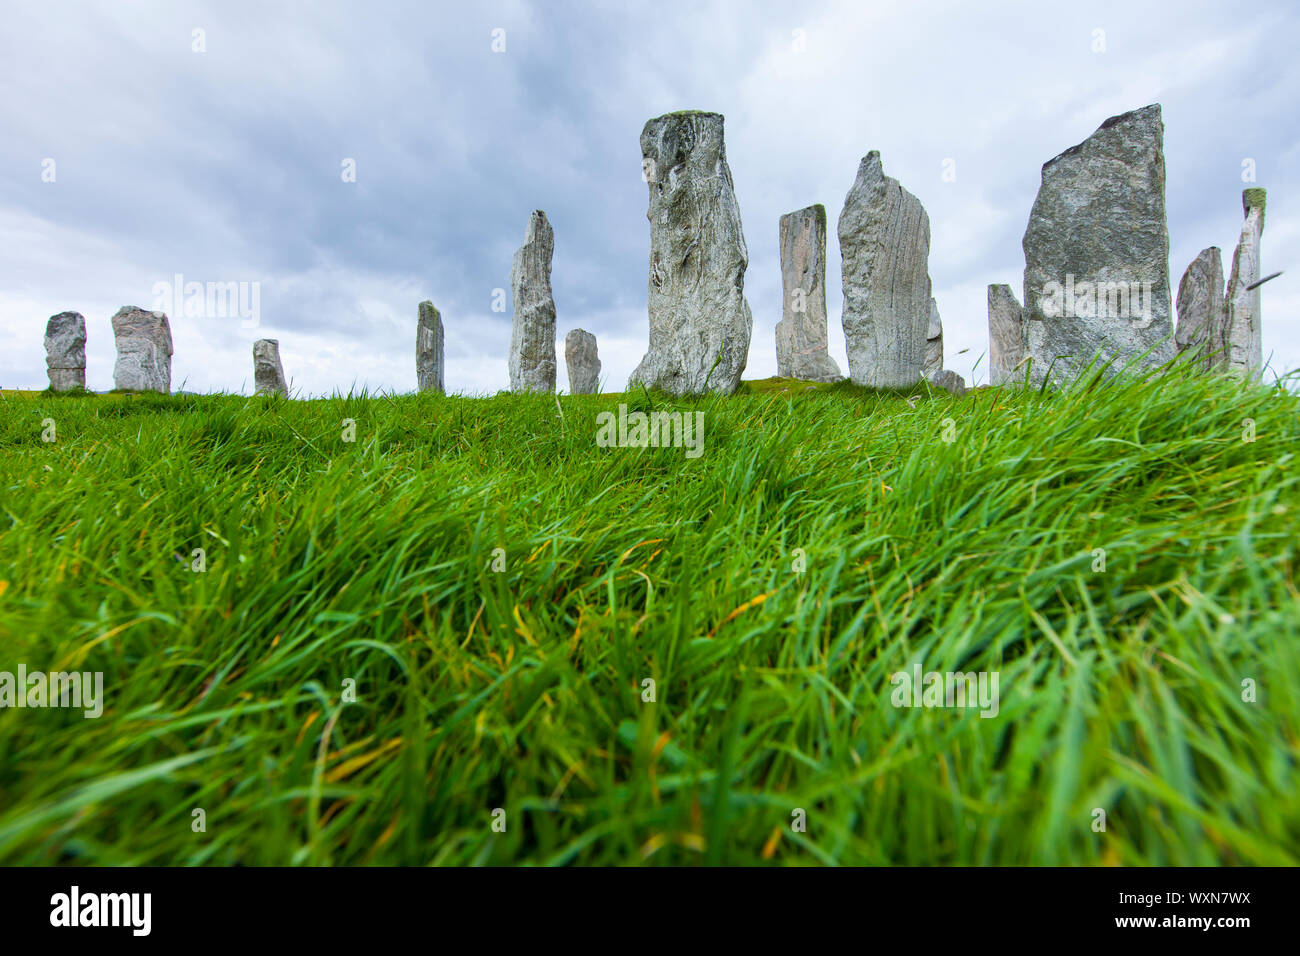 Monumento Neolítico Circulo de Calanais (Ring of Calanais). Isla Lewis. Outer Hebrides. Escocia. UK Stock Photo